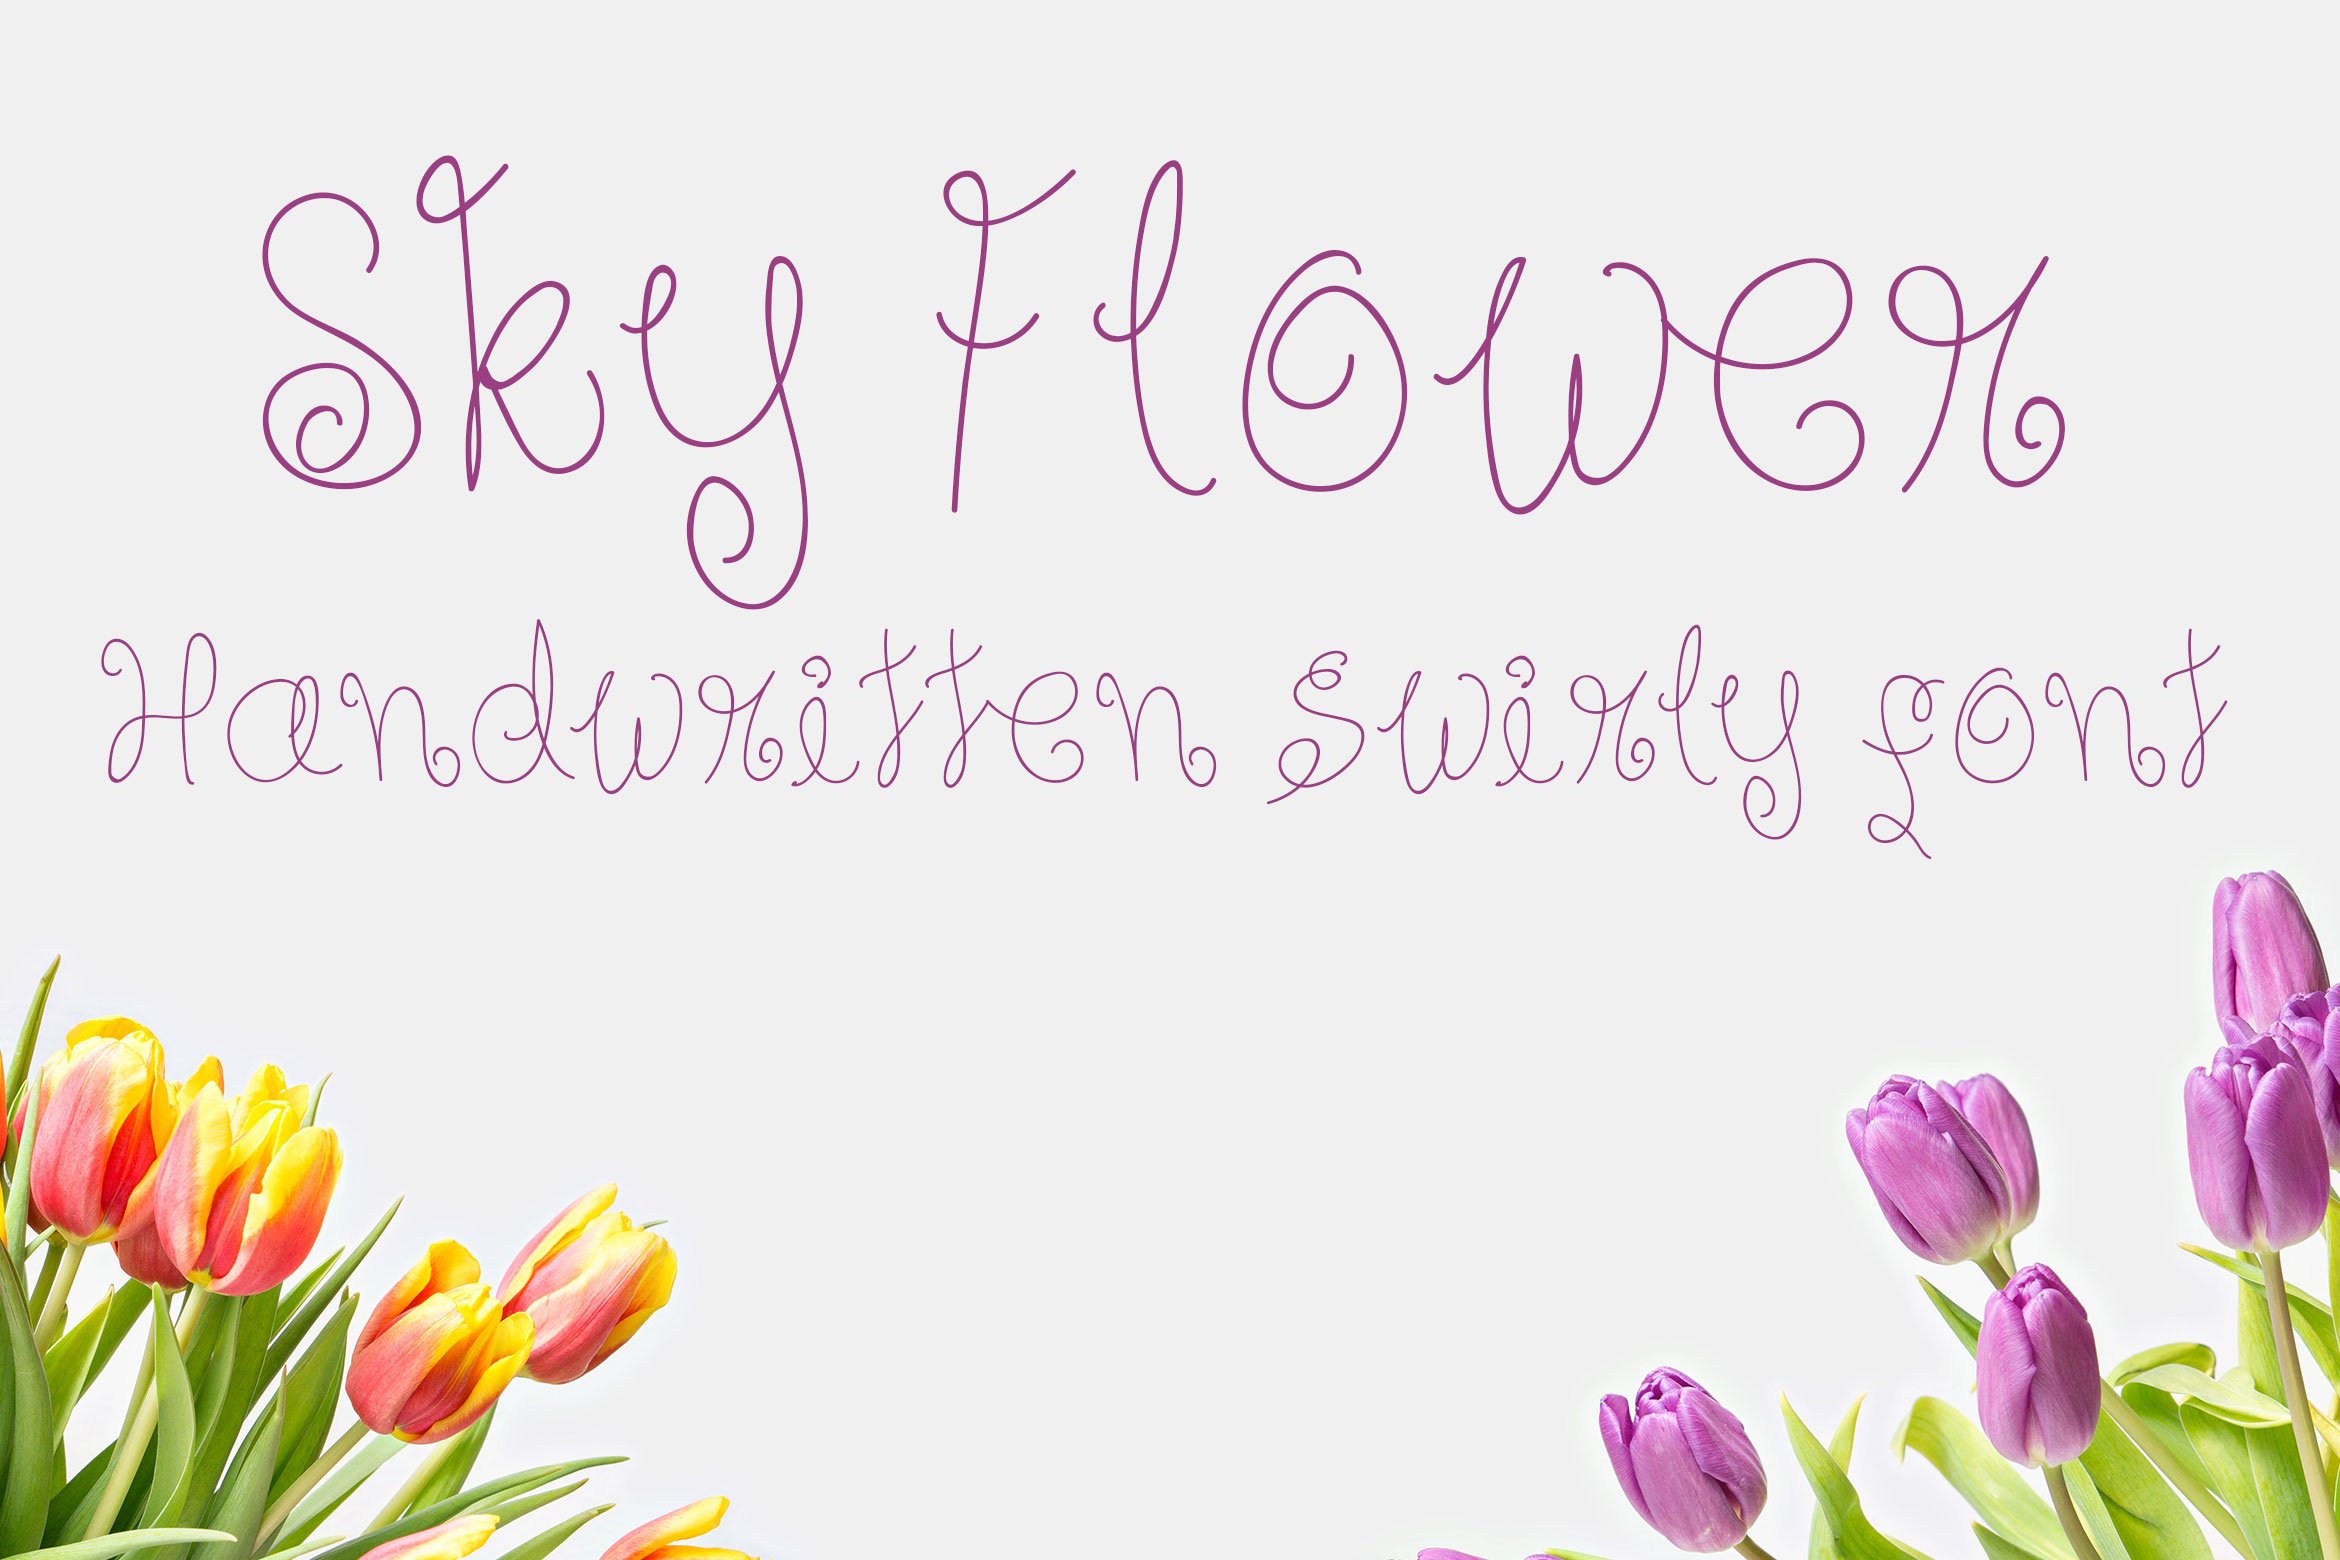 Sky Flower - Handwritten Font cover image.